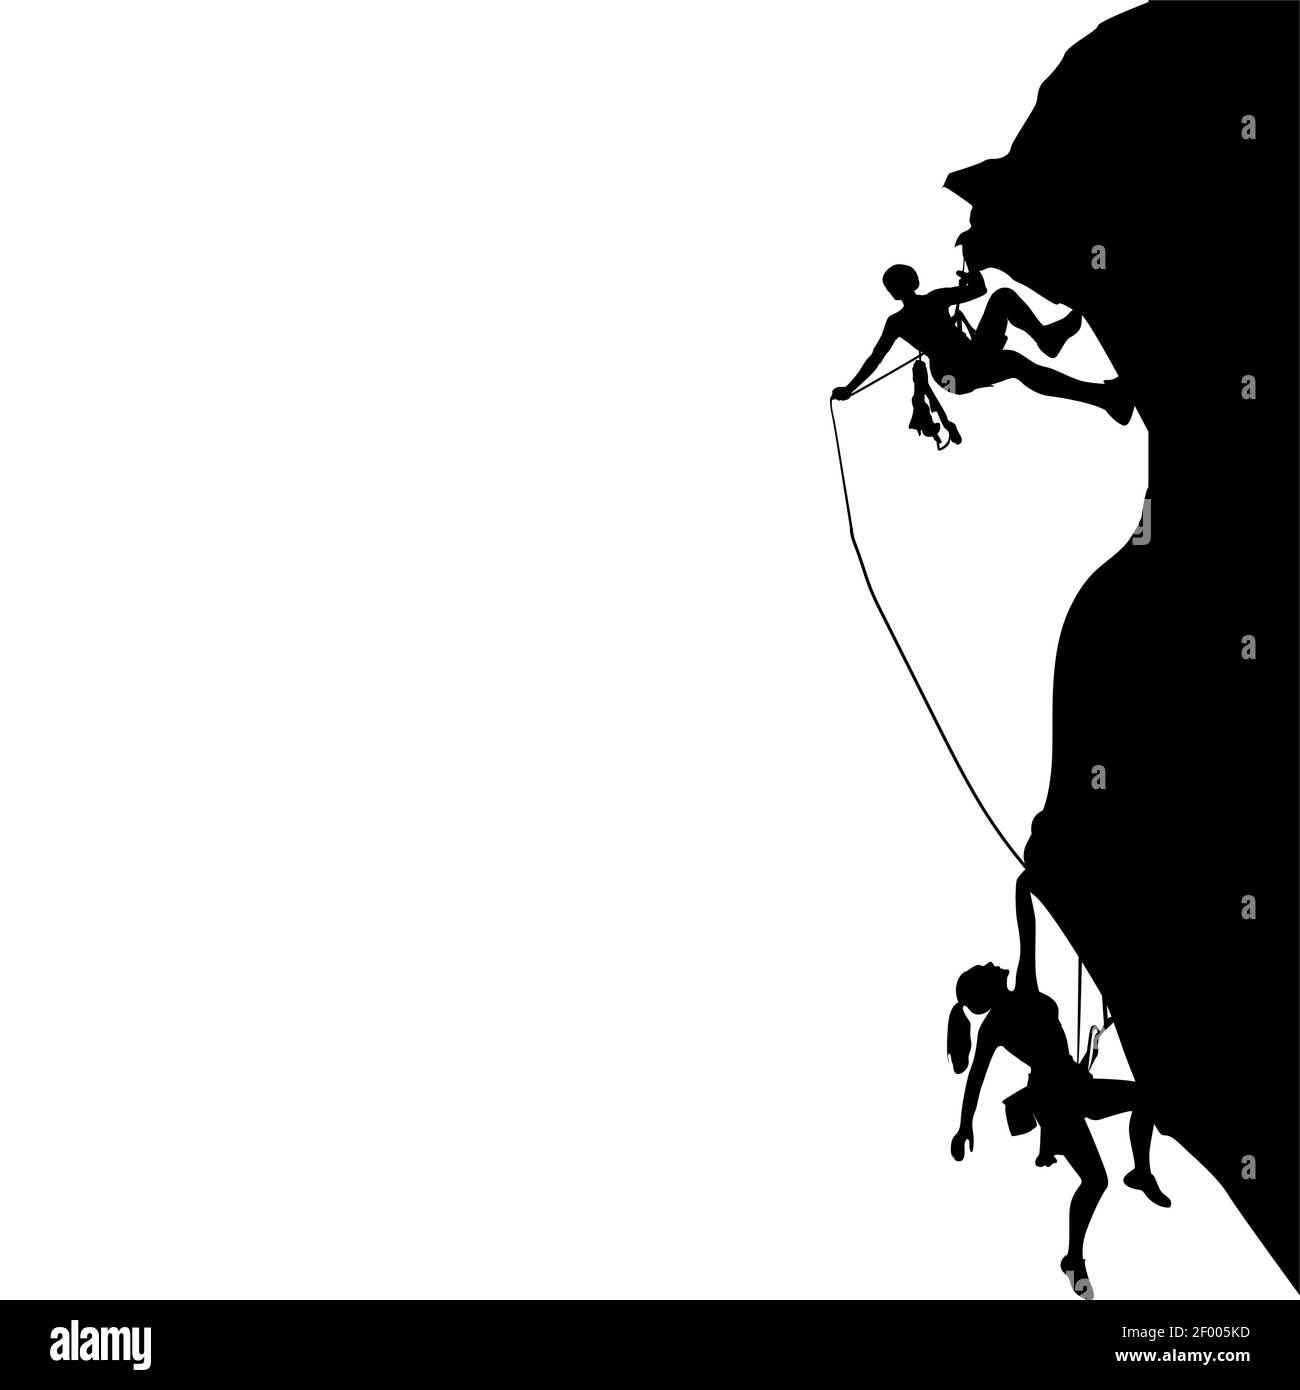 Mann und Frau klettern schwarze Silhouette, Aktivität Sicherheit Kletterer, extreme Felsklettern schwarz weiß, Teamarbeit Bergsteiger Hilfe, Vektor illustrat Stock Vektor